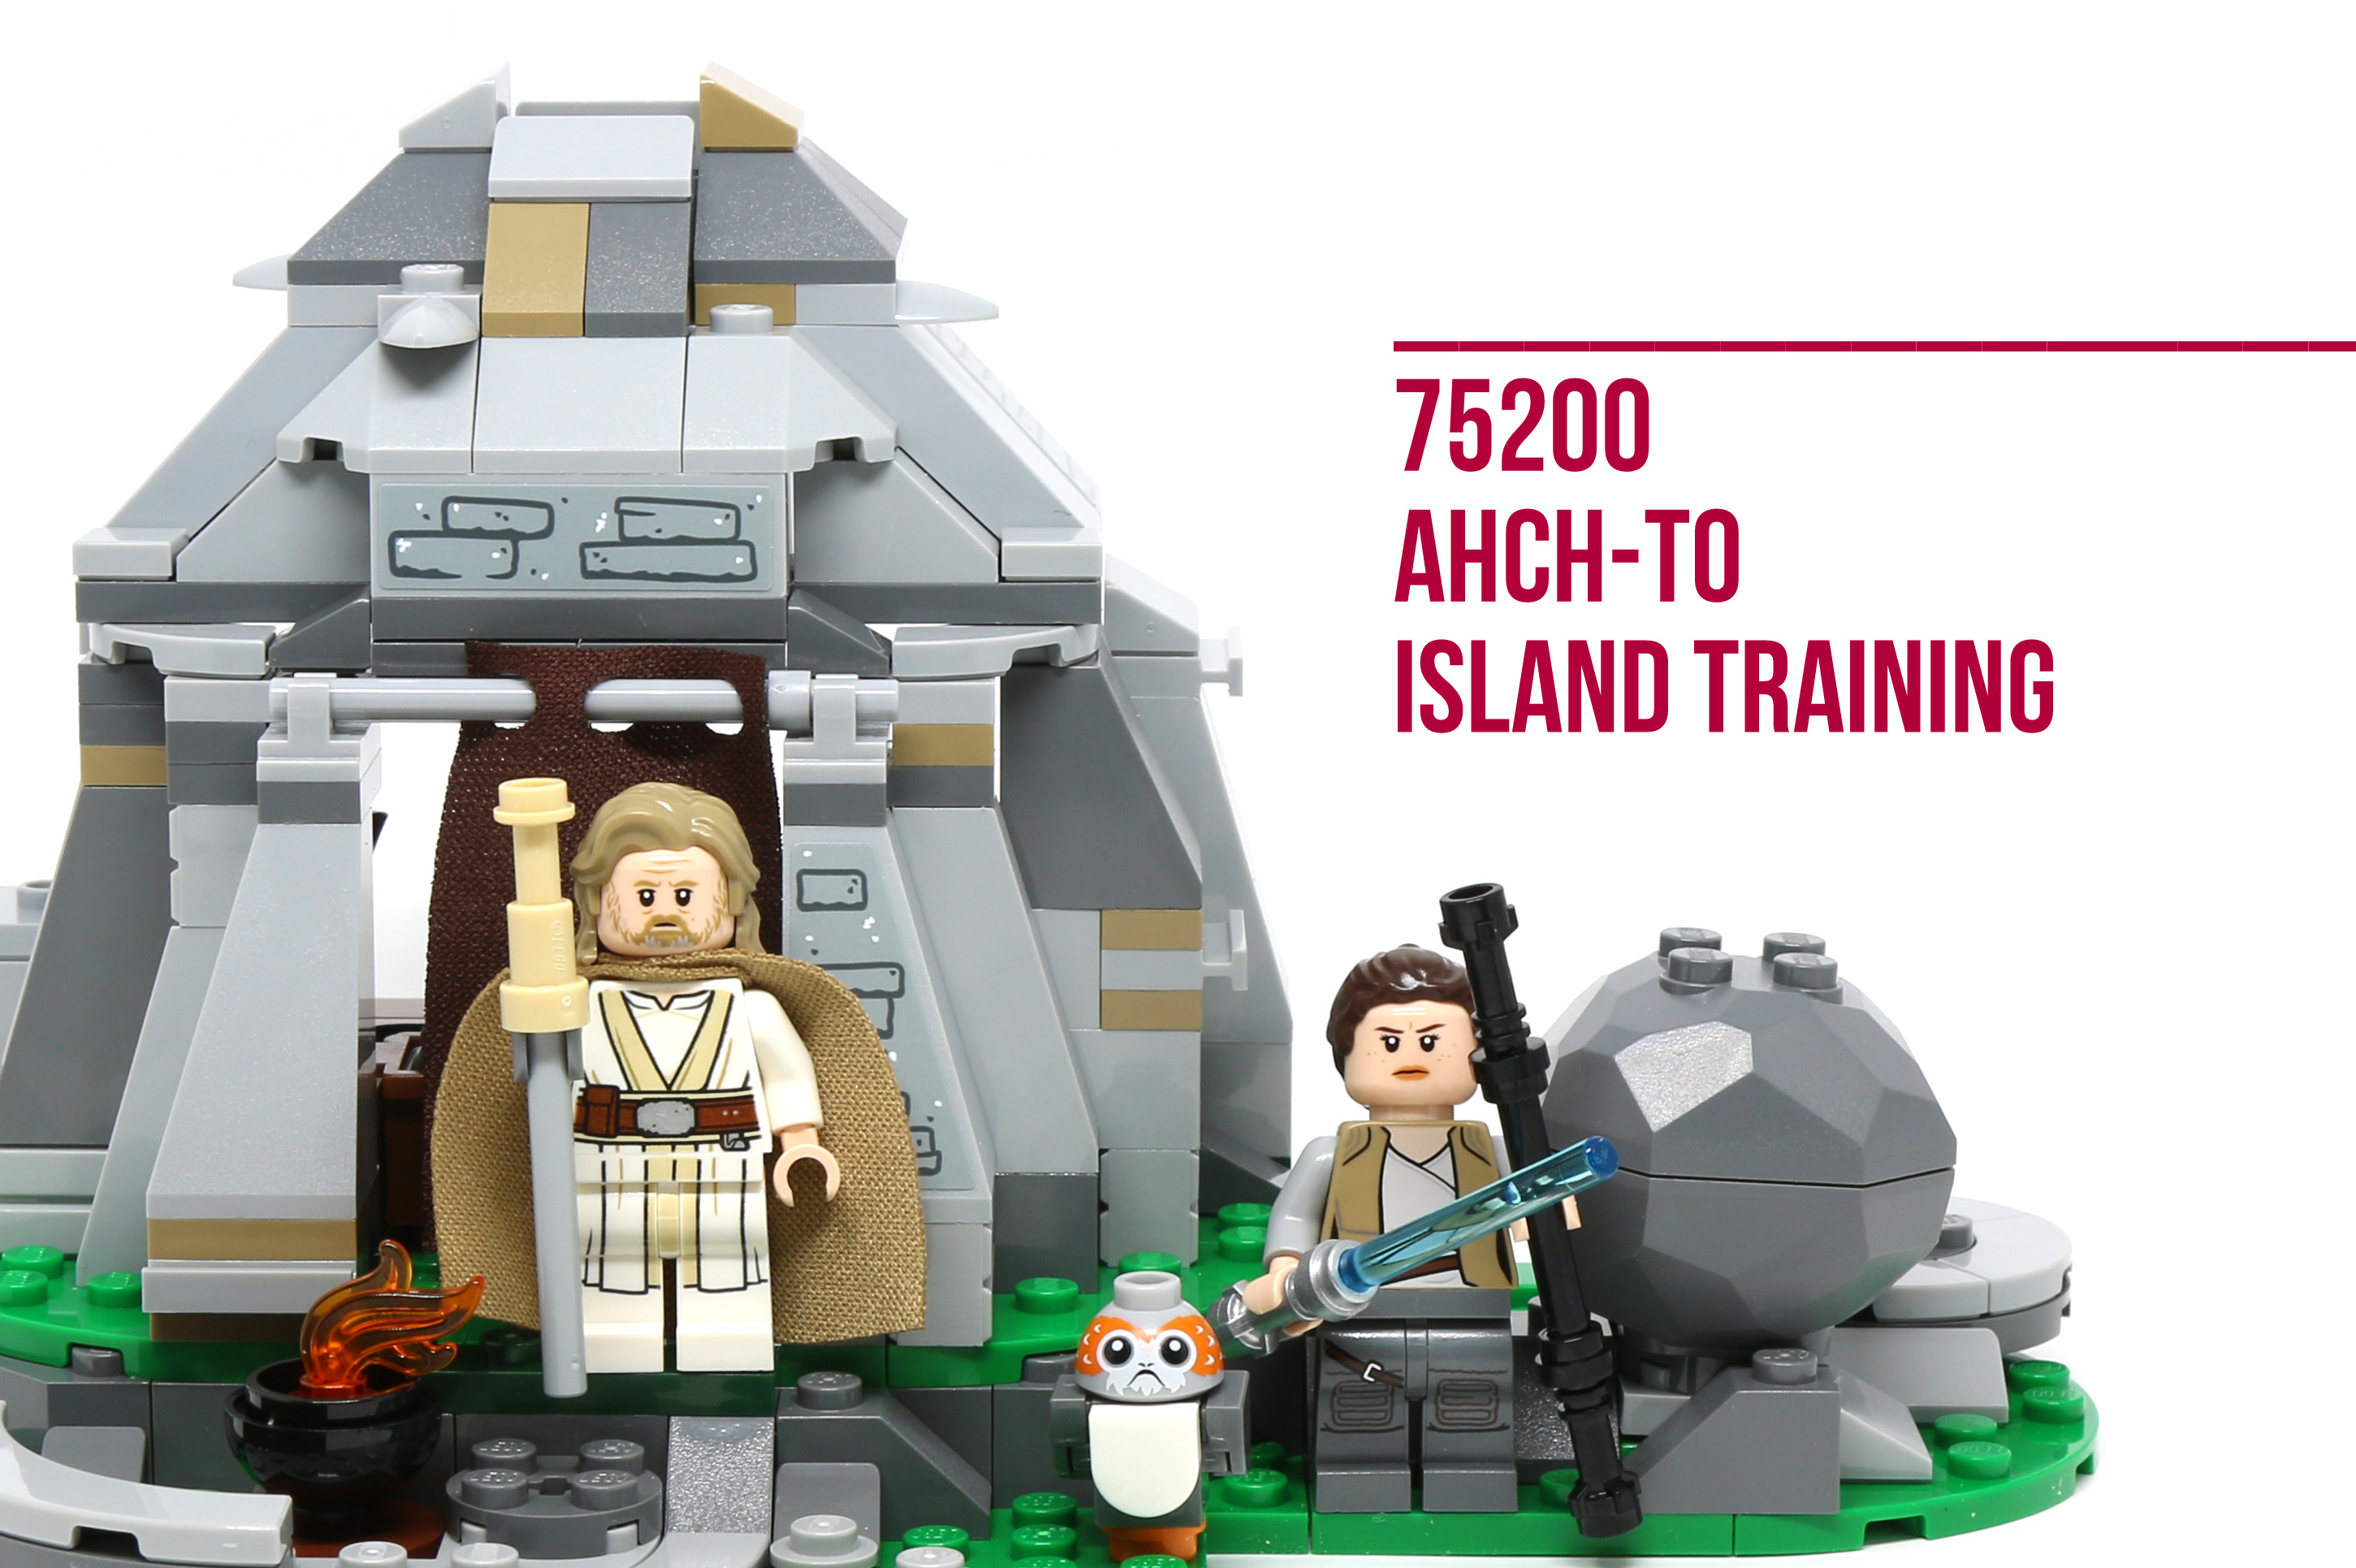 LEGO Star Wars The Last Jedi Ahch-To Island Training 75200